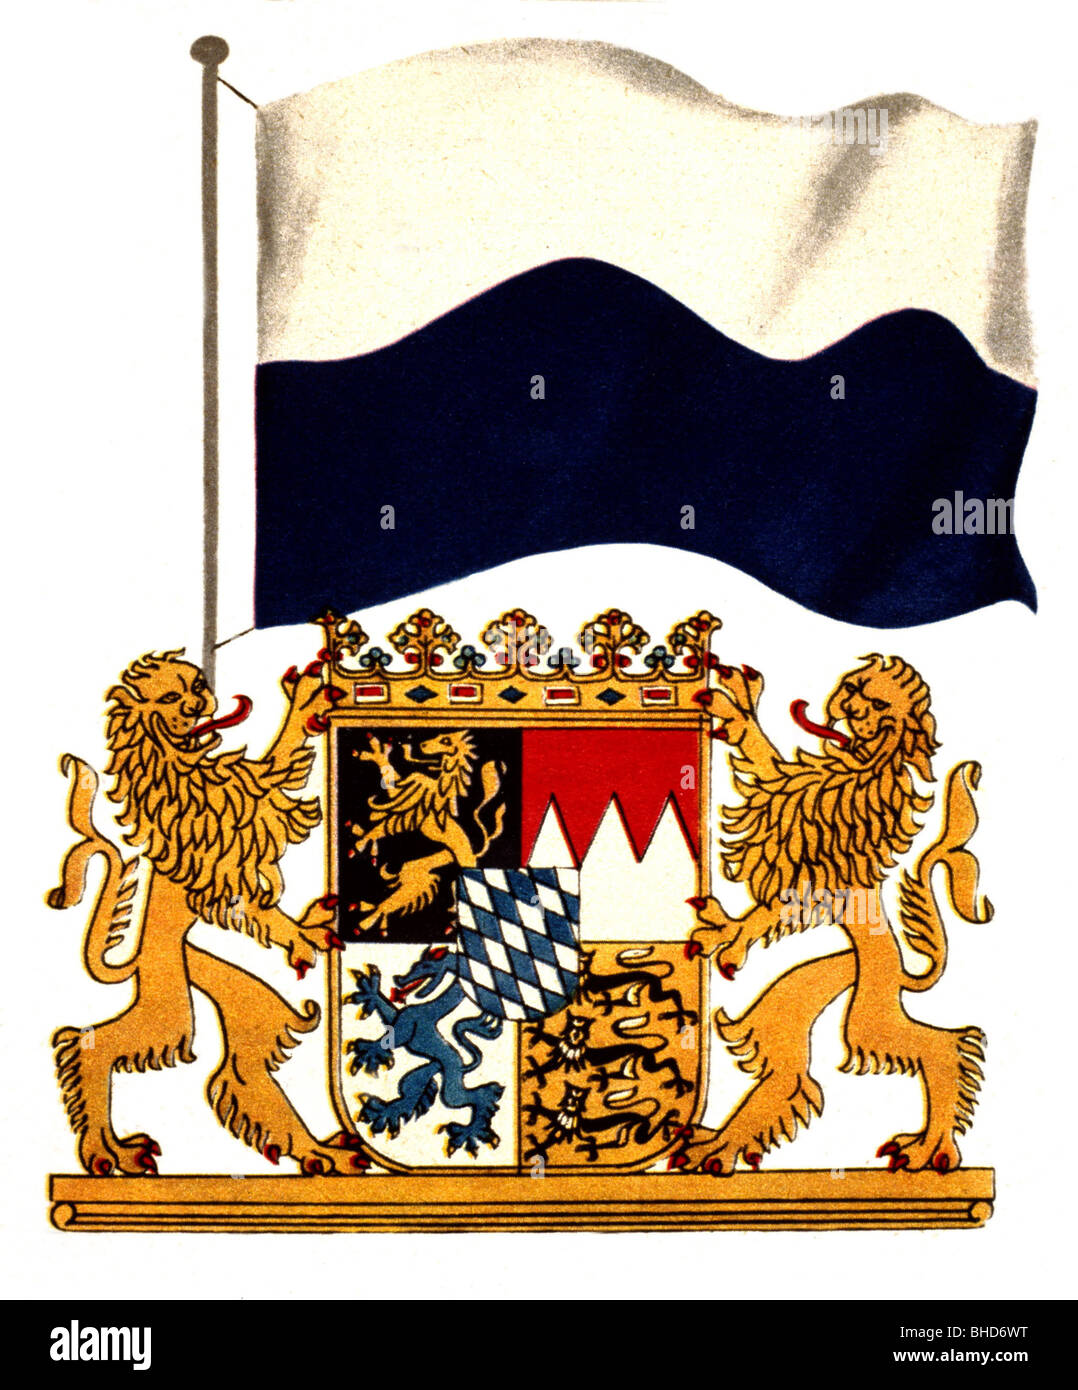 Fahne Bundesland Bayern mit Wappen Deutschland